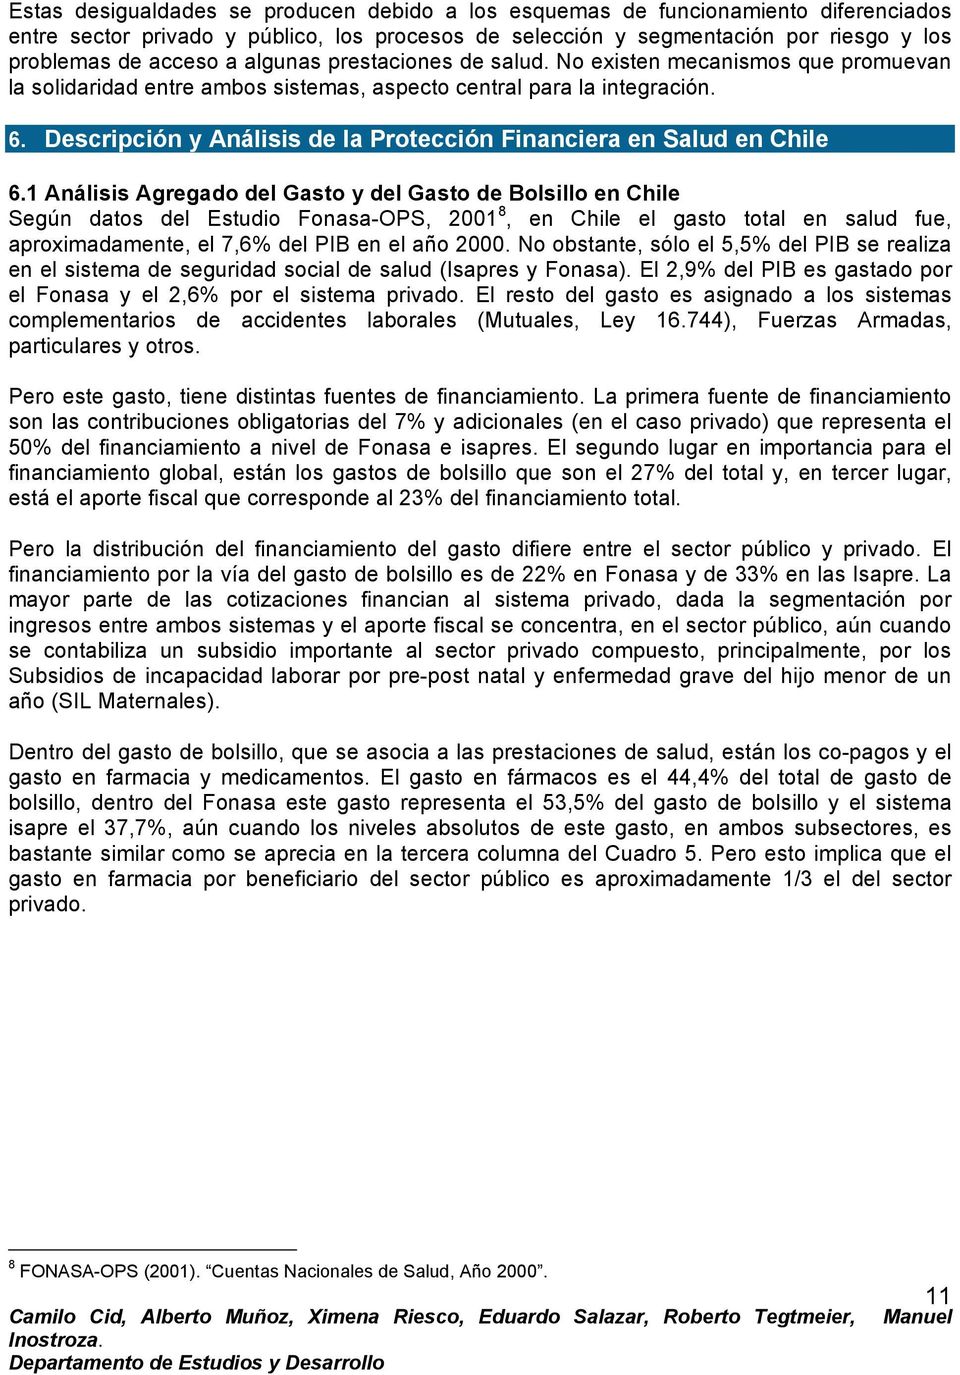 Descripción y Análisis de la Protección Financiera en Salud en Chile 6.